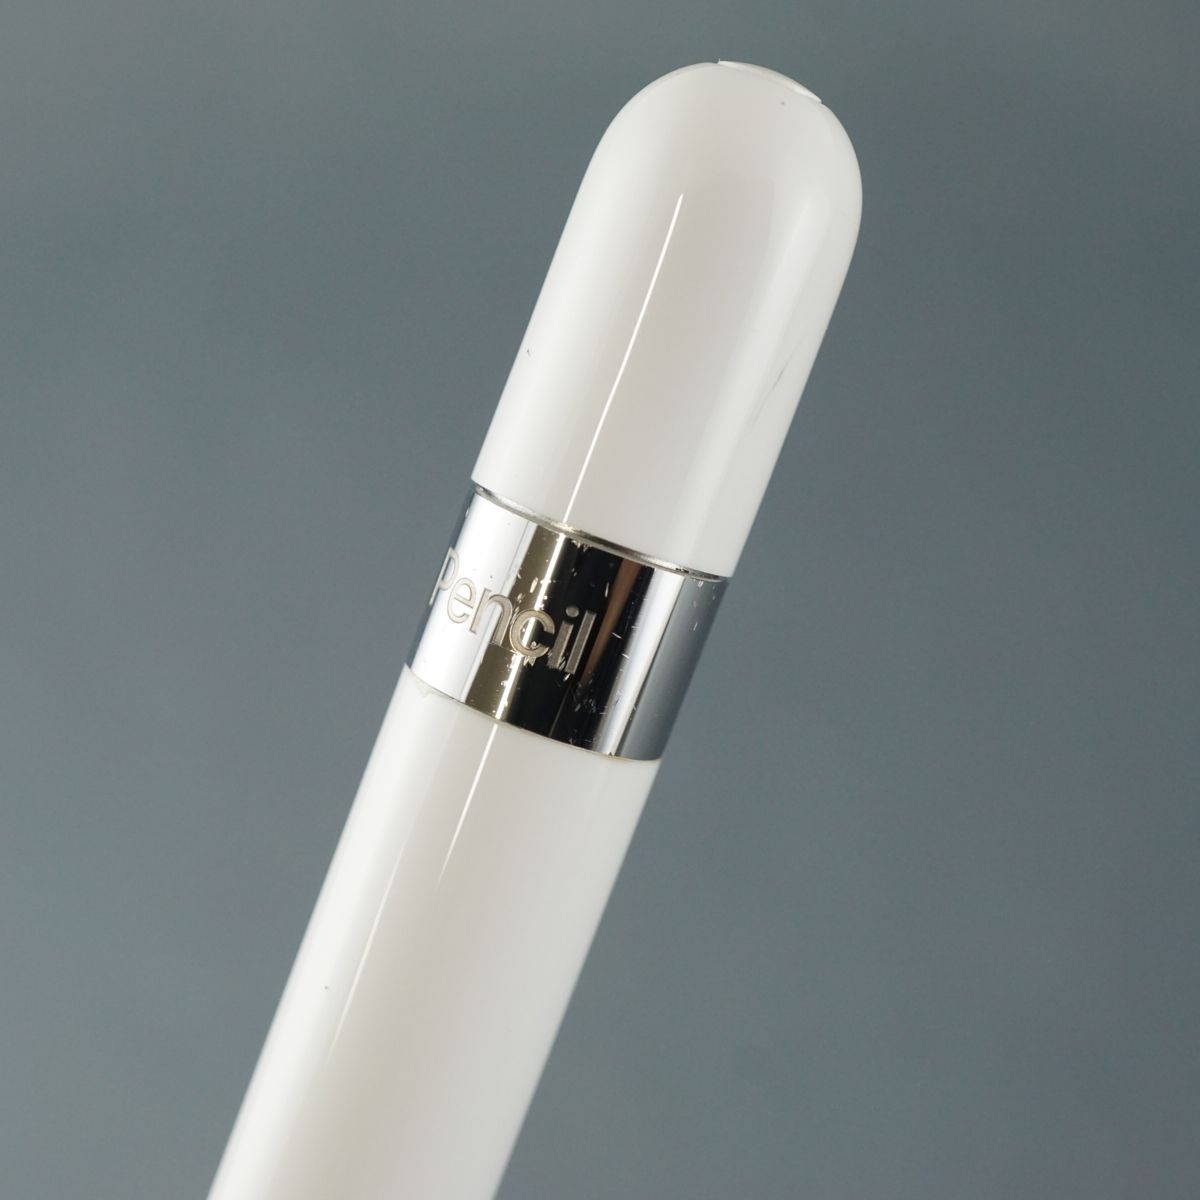 Apple Pencil アップルペンシル USED美品 本体のみ 第一世代 A1603 